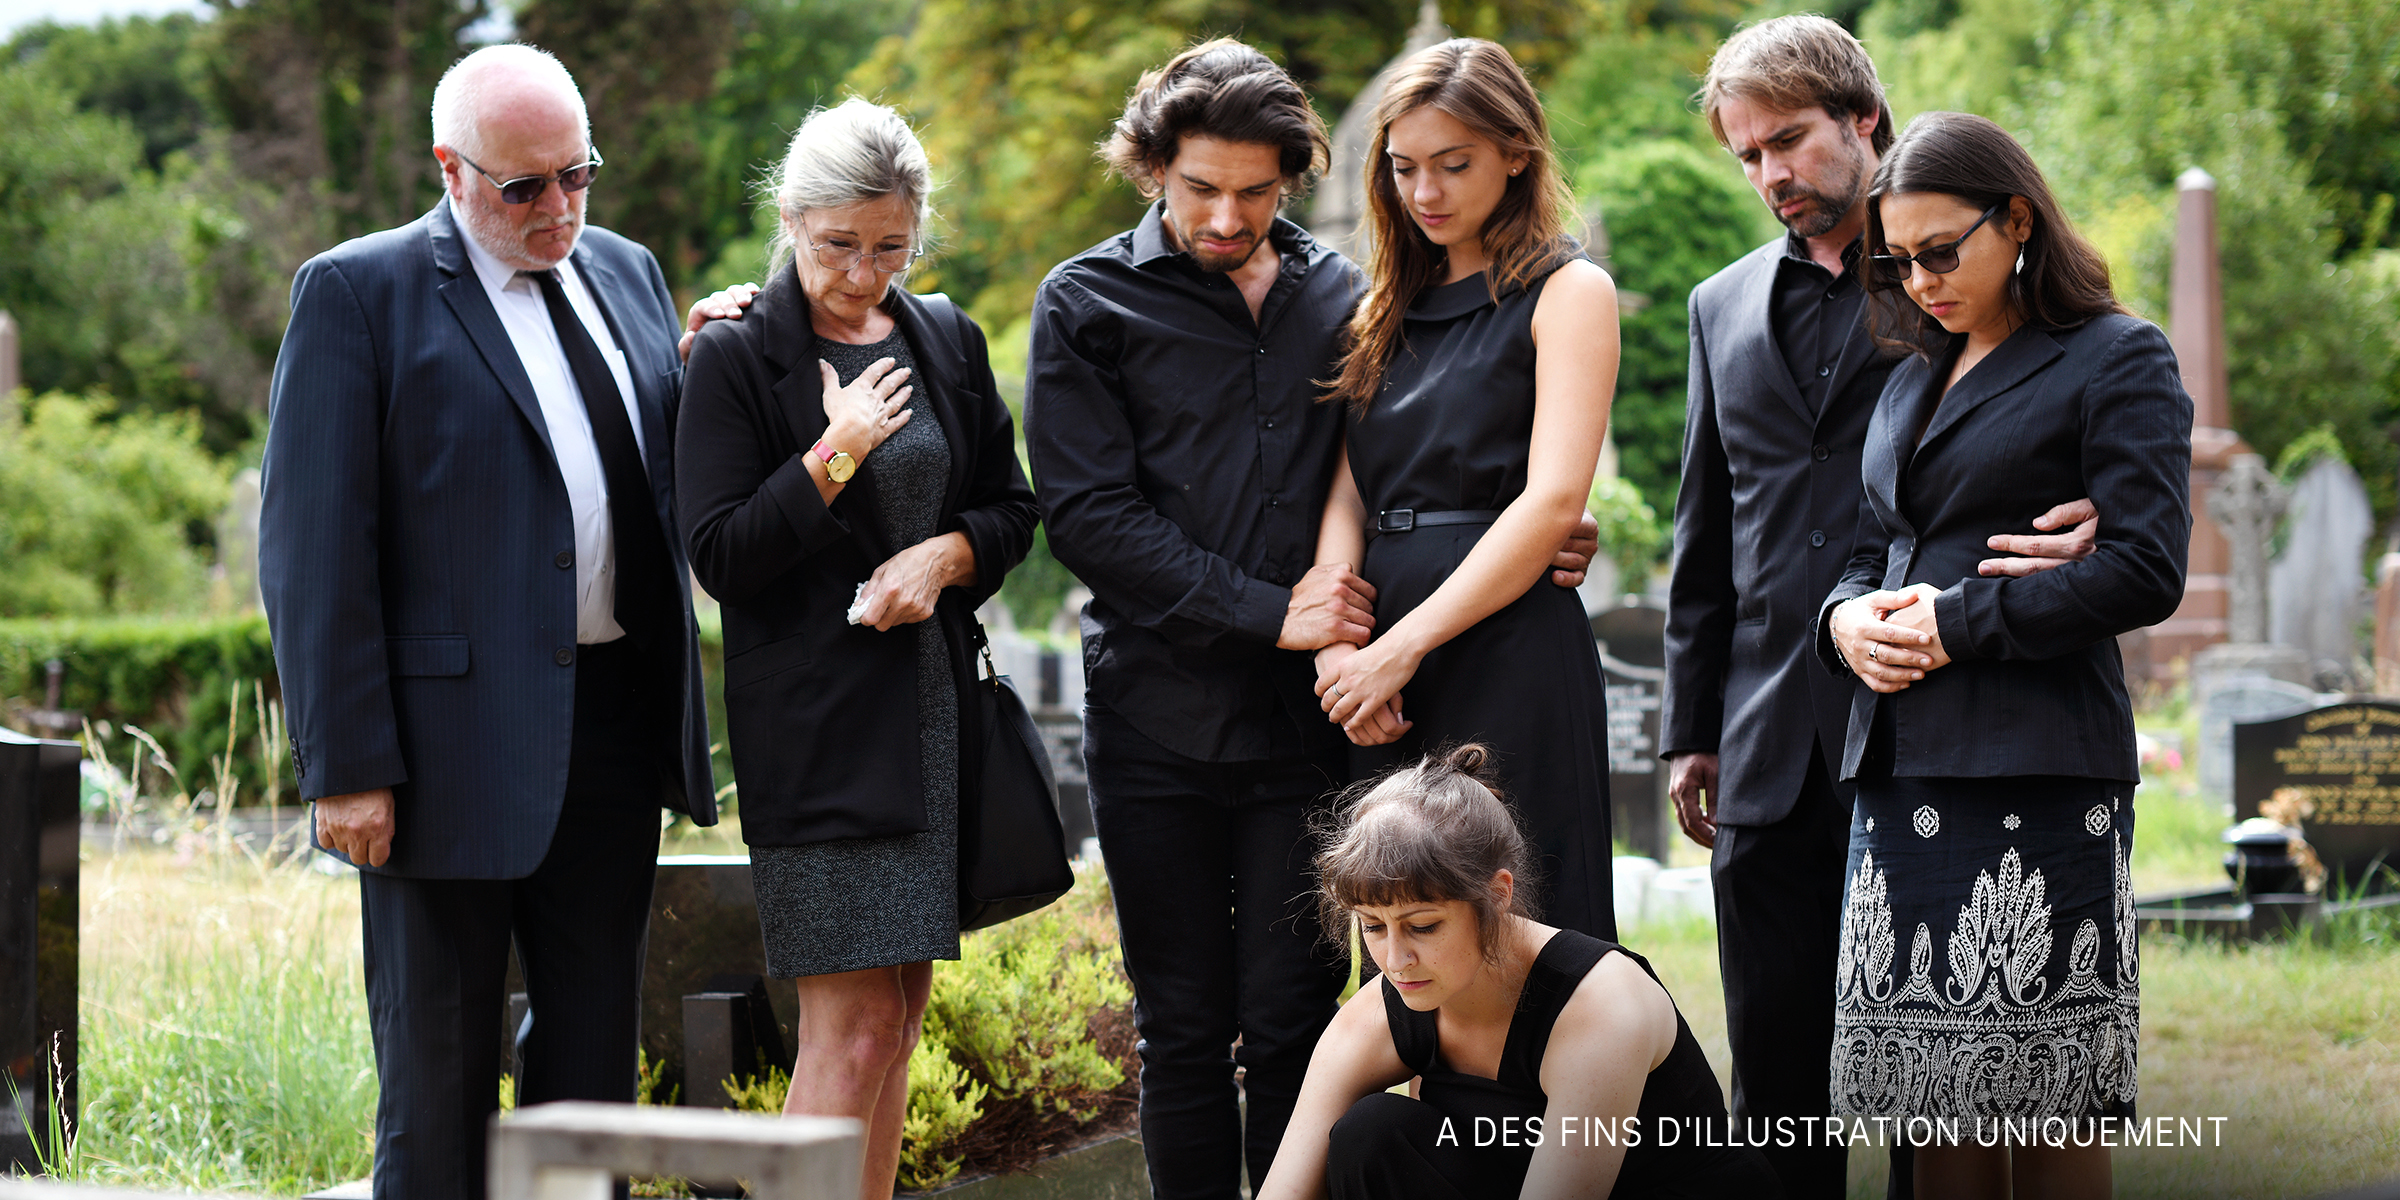 Famille déposant des fleurs sur la tombe dans un cimetière | Source : Shutterstock